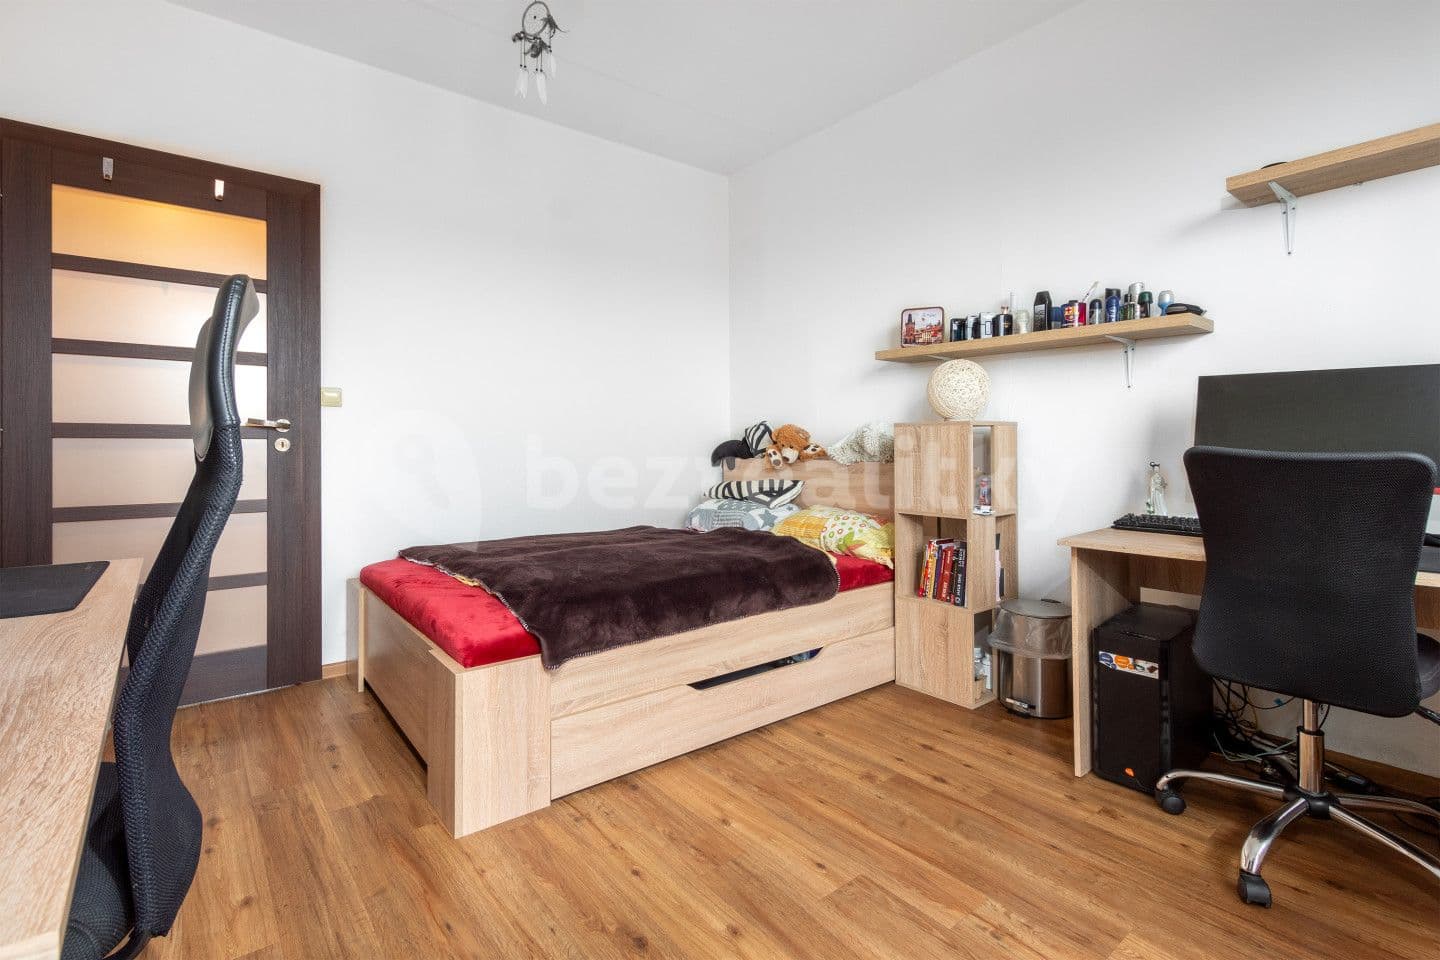 3 bedroom flat for sale, 72 m², Tovární, Skřivany, Královéhradecký Region